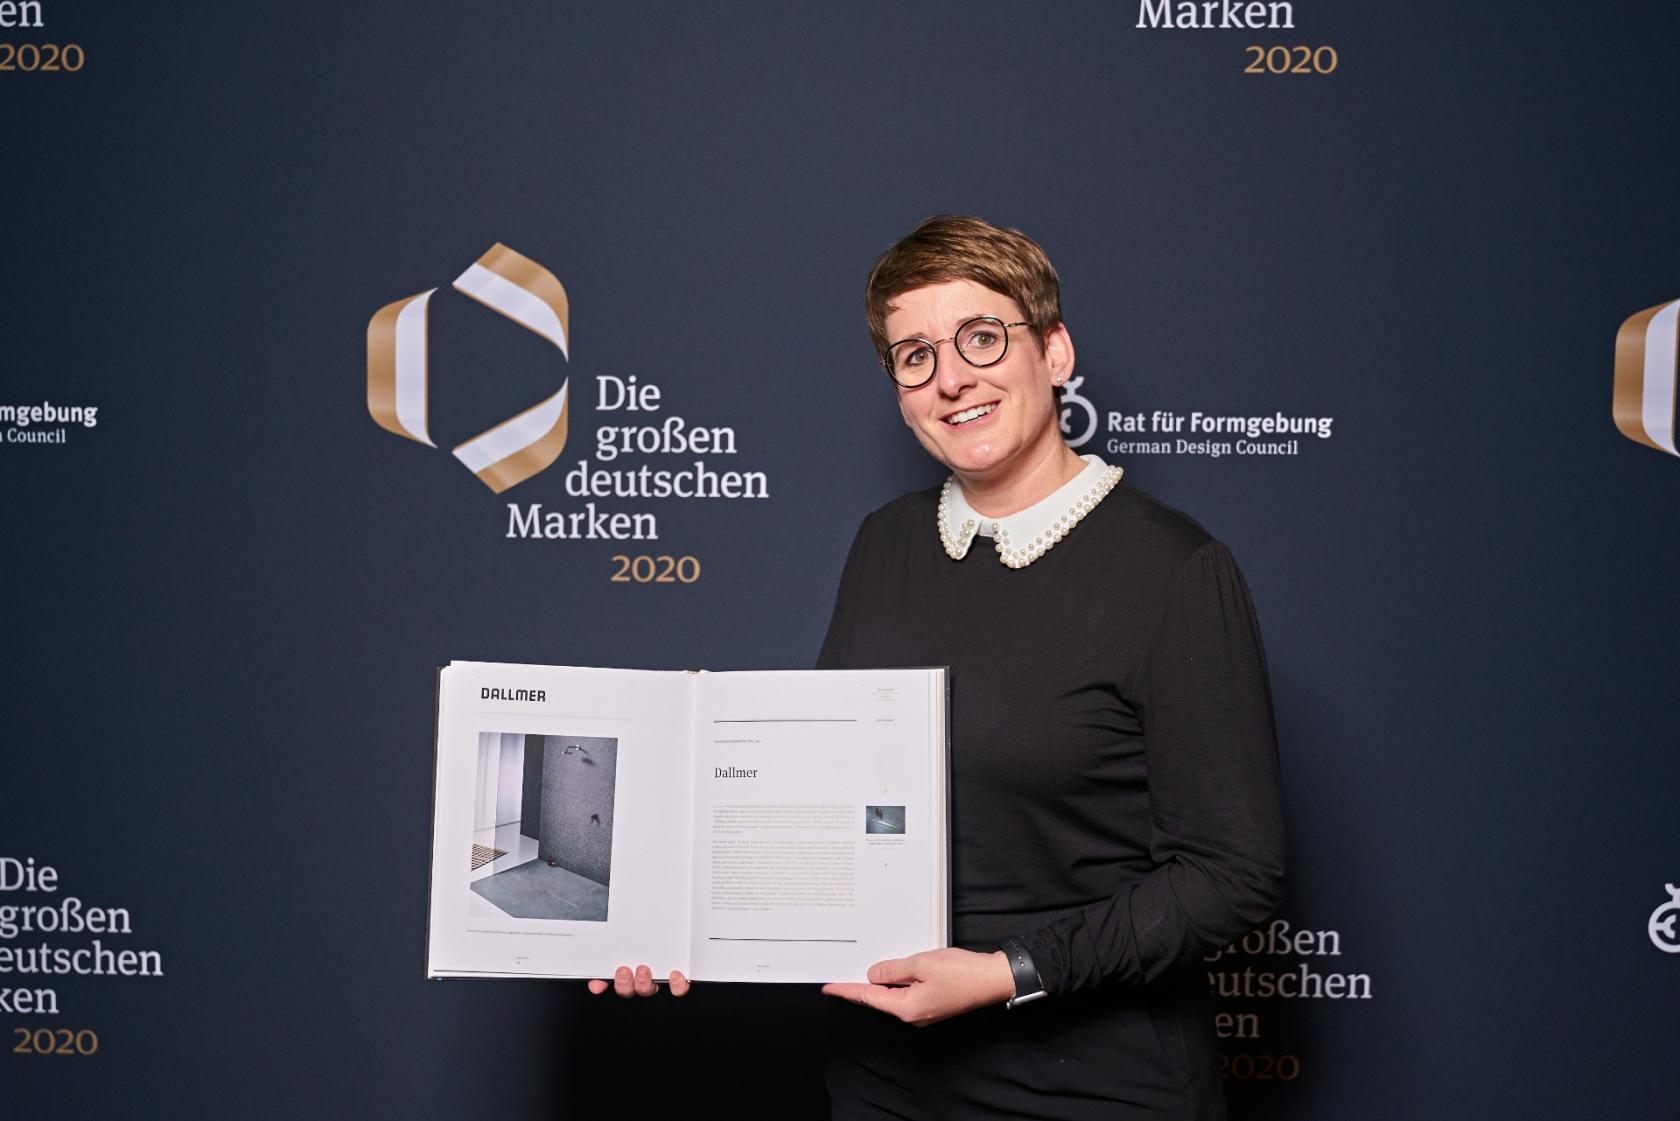 Kürzlich wurde die siebte Ausgabe des Buchs „Die großen deutschen Marken“ in Berlin vorgestellt. Yvonne Dallmer, Geschäftsführerin der Dallmer GmbH + Co. KG, zeigt stolz den Eintrag ihres Unternehmens in der Publikation des Rats für Formgebung. (Foto:  Rat für Formgebung / Fotos: Martin Diepold – Grand Visions)
